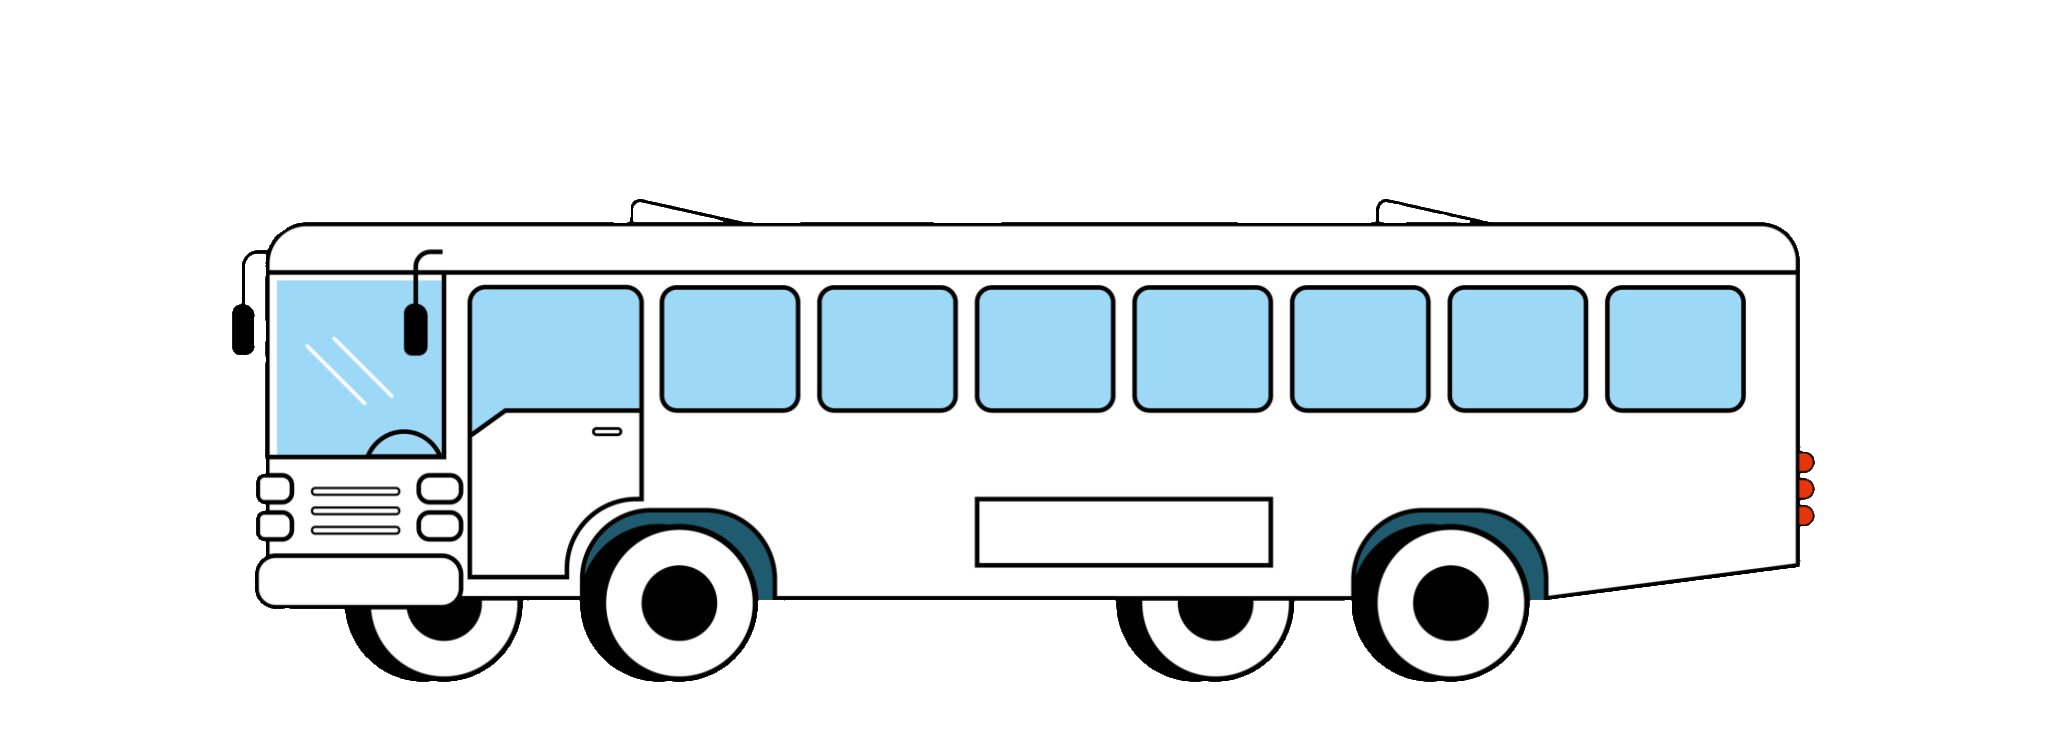 bus-69